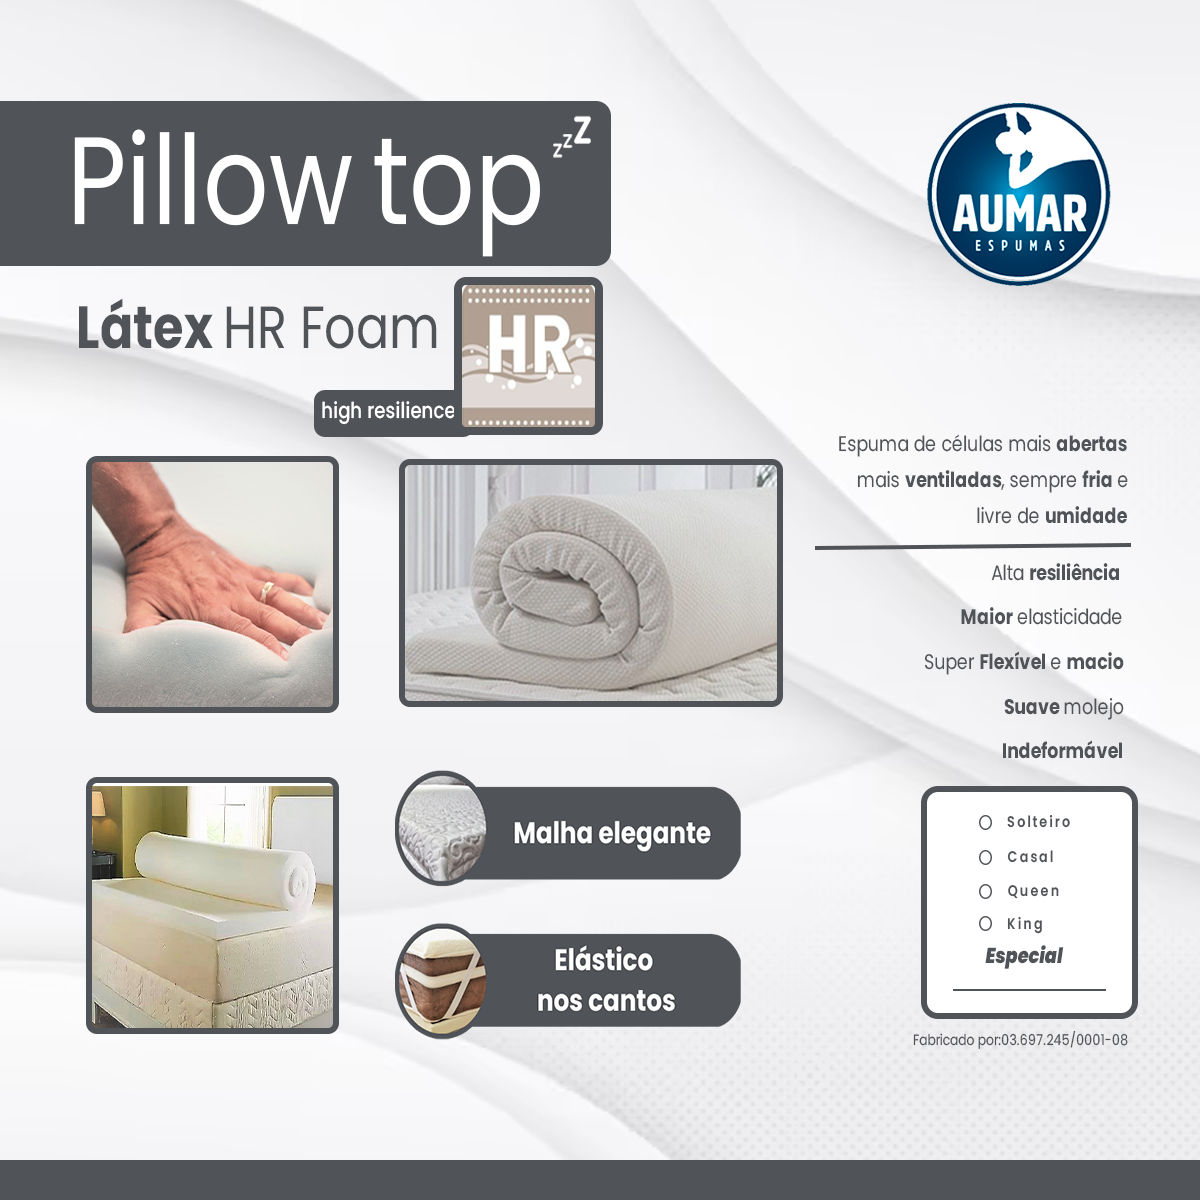 Pillow Top Látex HR Foam Casal 1,38 X 1,88 X 5 -Aumar - 7